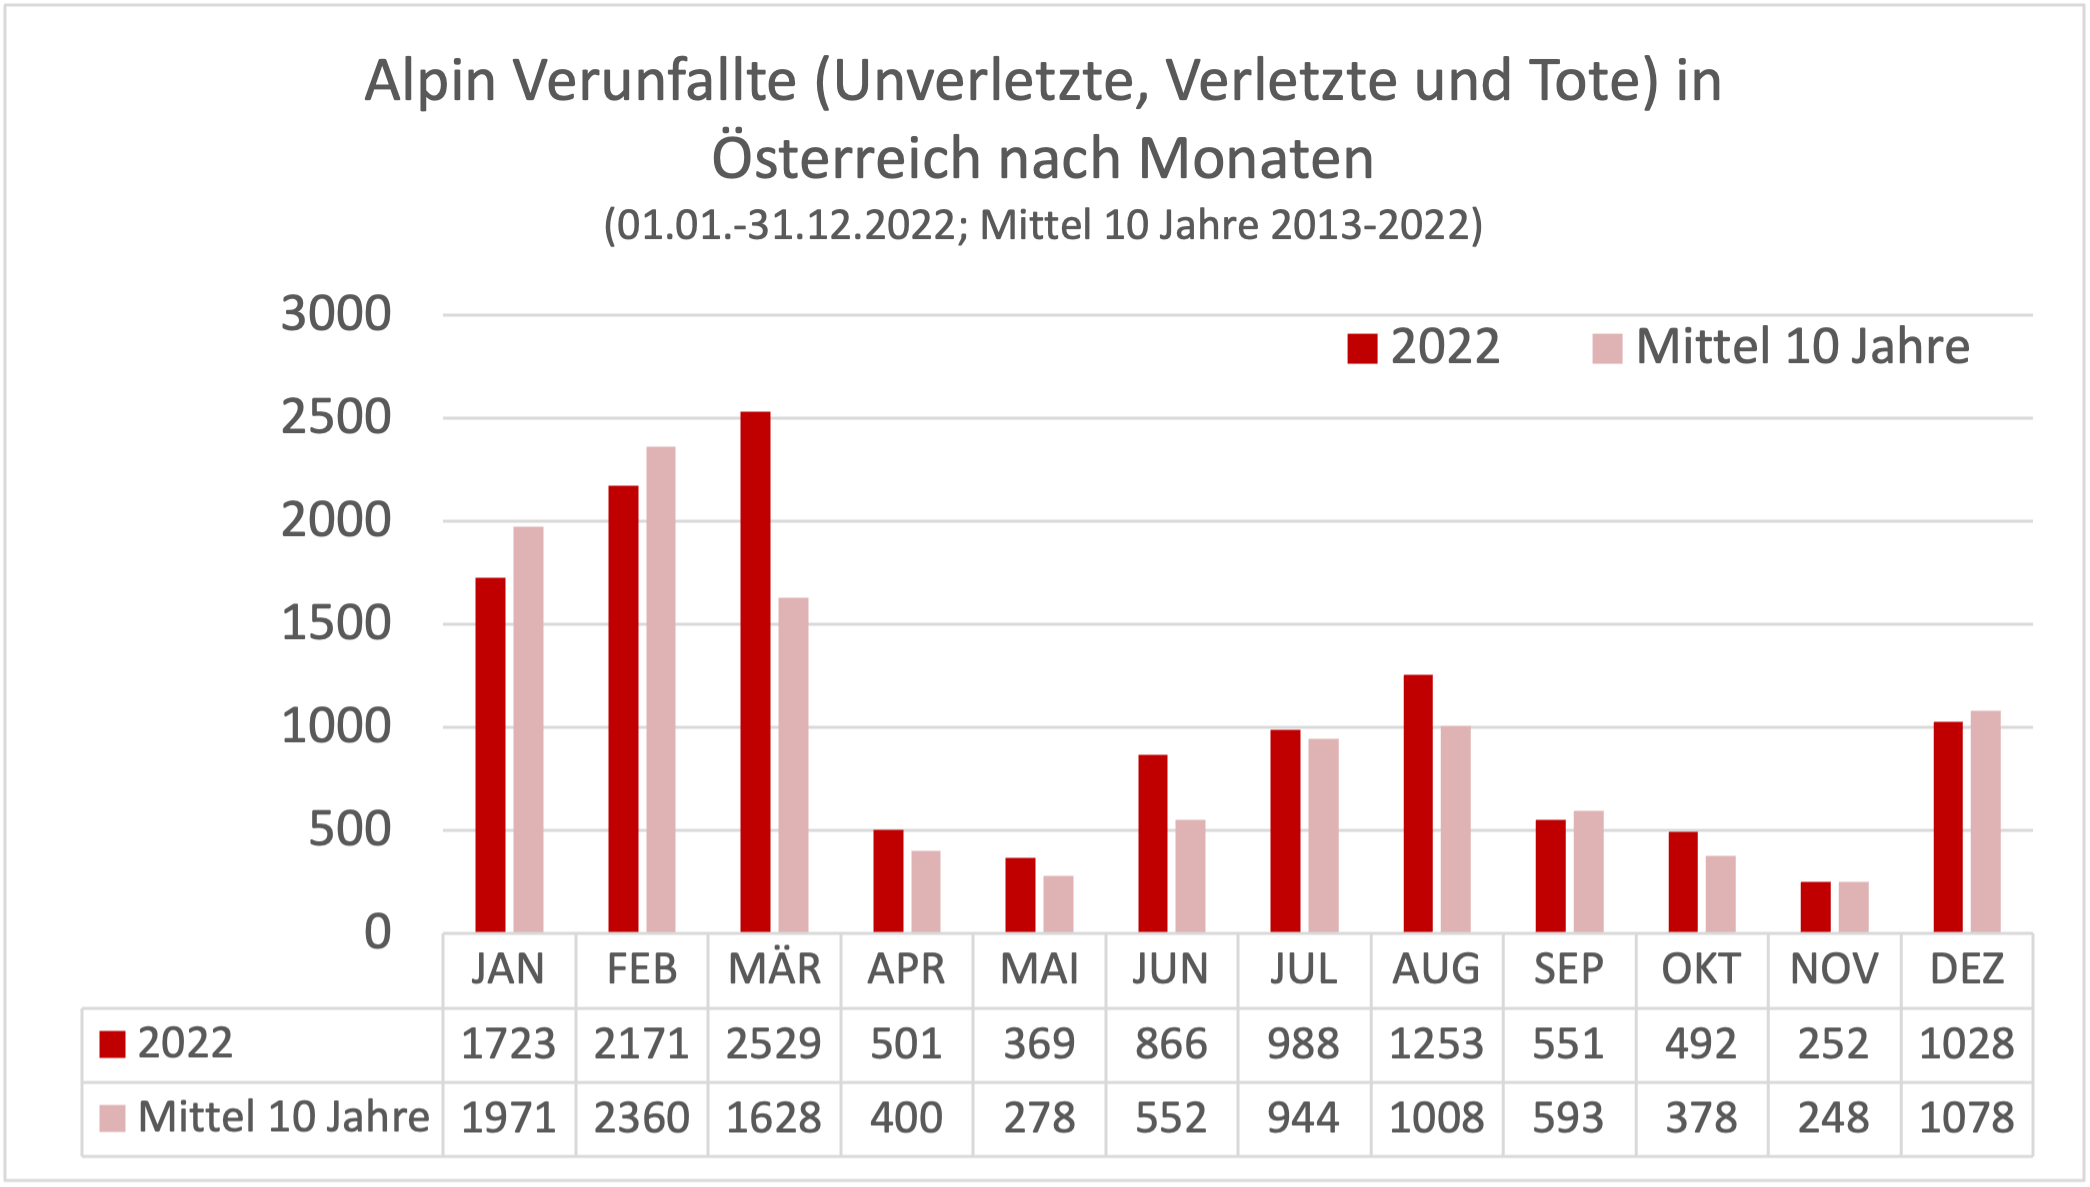 Grafik 4: Verunfallte (Tote, Verletzte, Unverletzte) in Österreichs Bergen nach Monaten – 01.01.2022 bis 31.12.2022 und Mittel 10 Jahre 2013 bis 2022.